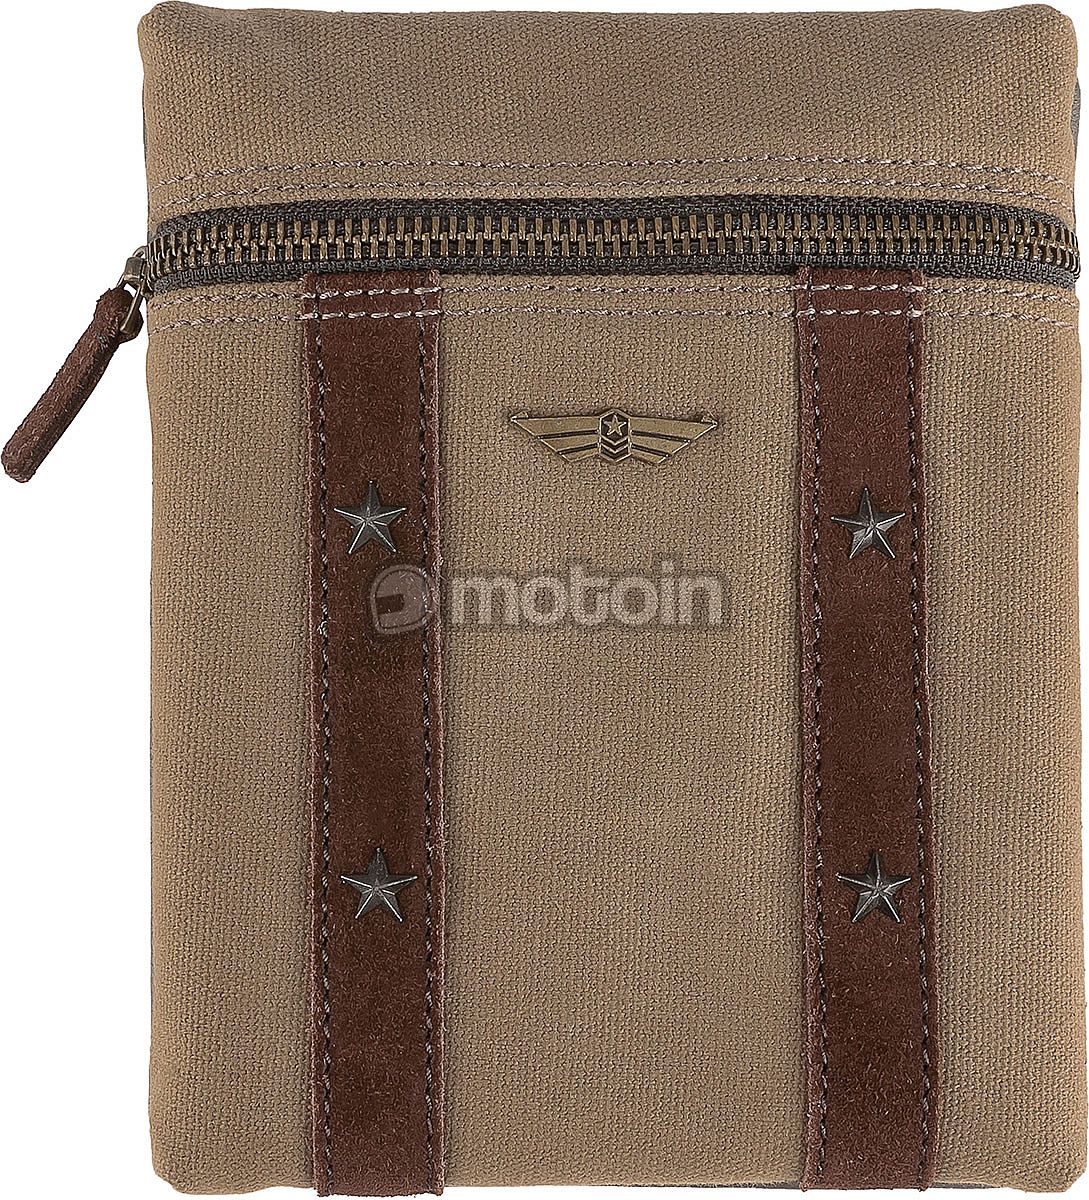 Artonvel Messenger Bag Military